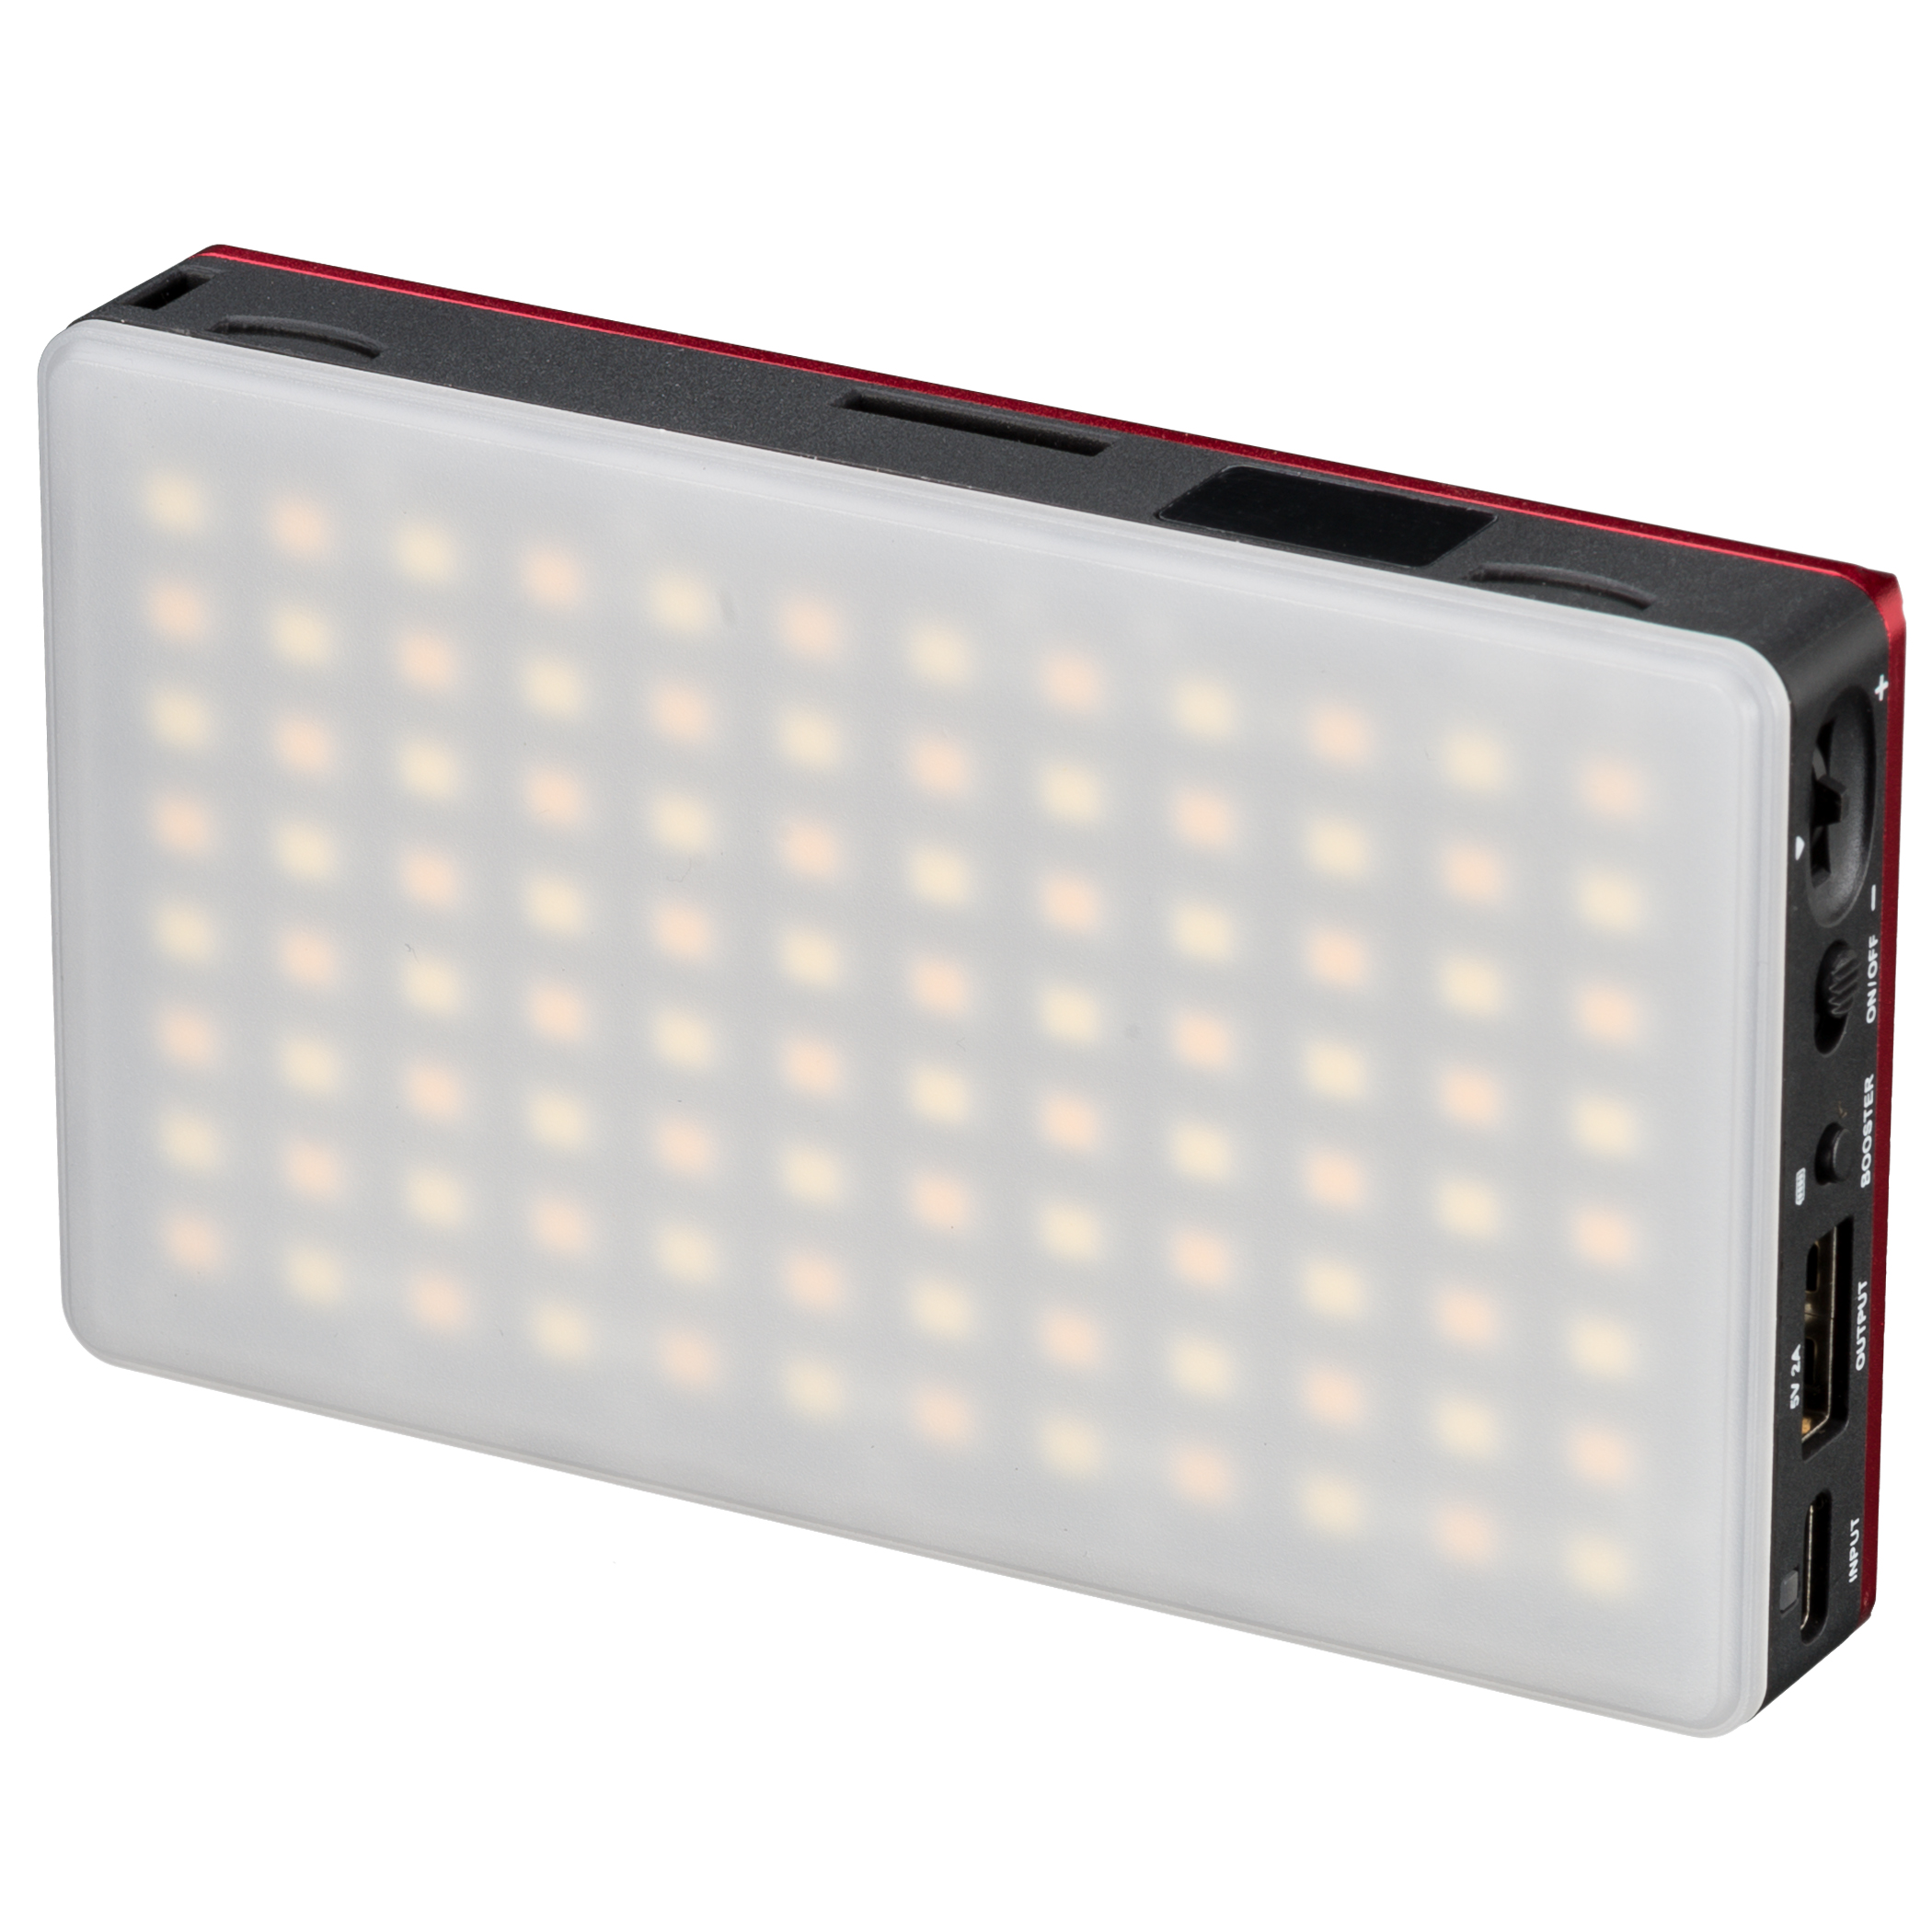 BRESSER Pocket LED 9 W Luz continua bicolor para Uso móvil y Fotografía en Smartphone